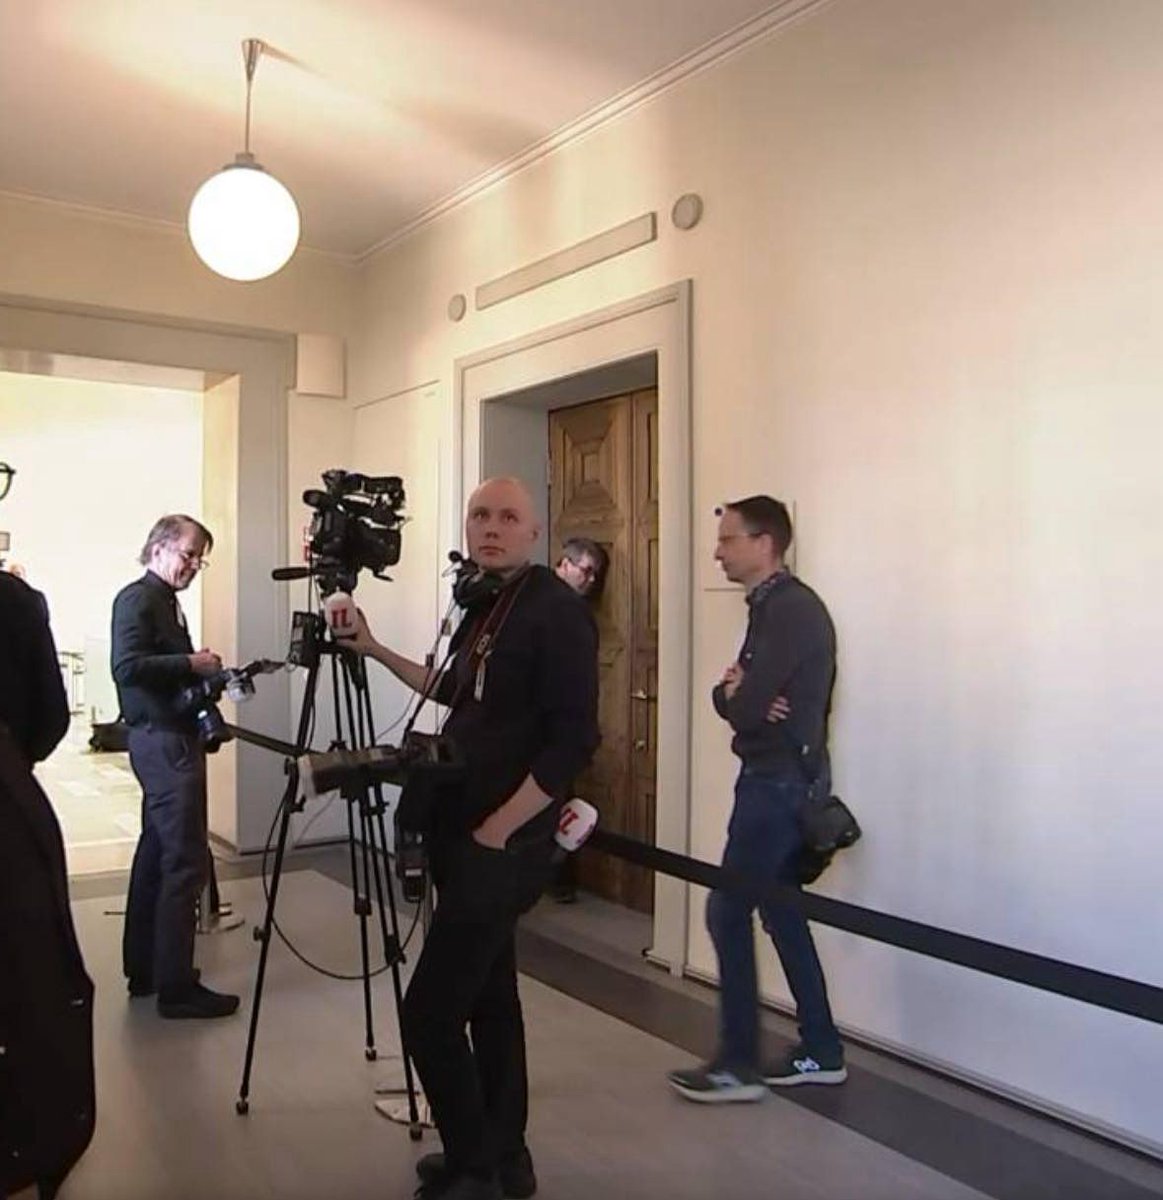 Median edustaja yrittää salakuunnella Perussuomalaisten ryhmäkokousta oven läpi. Onko tämä 'vastuullista salakuuntelua'? #salakuuntelu #media